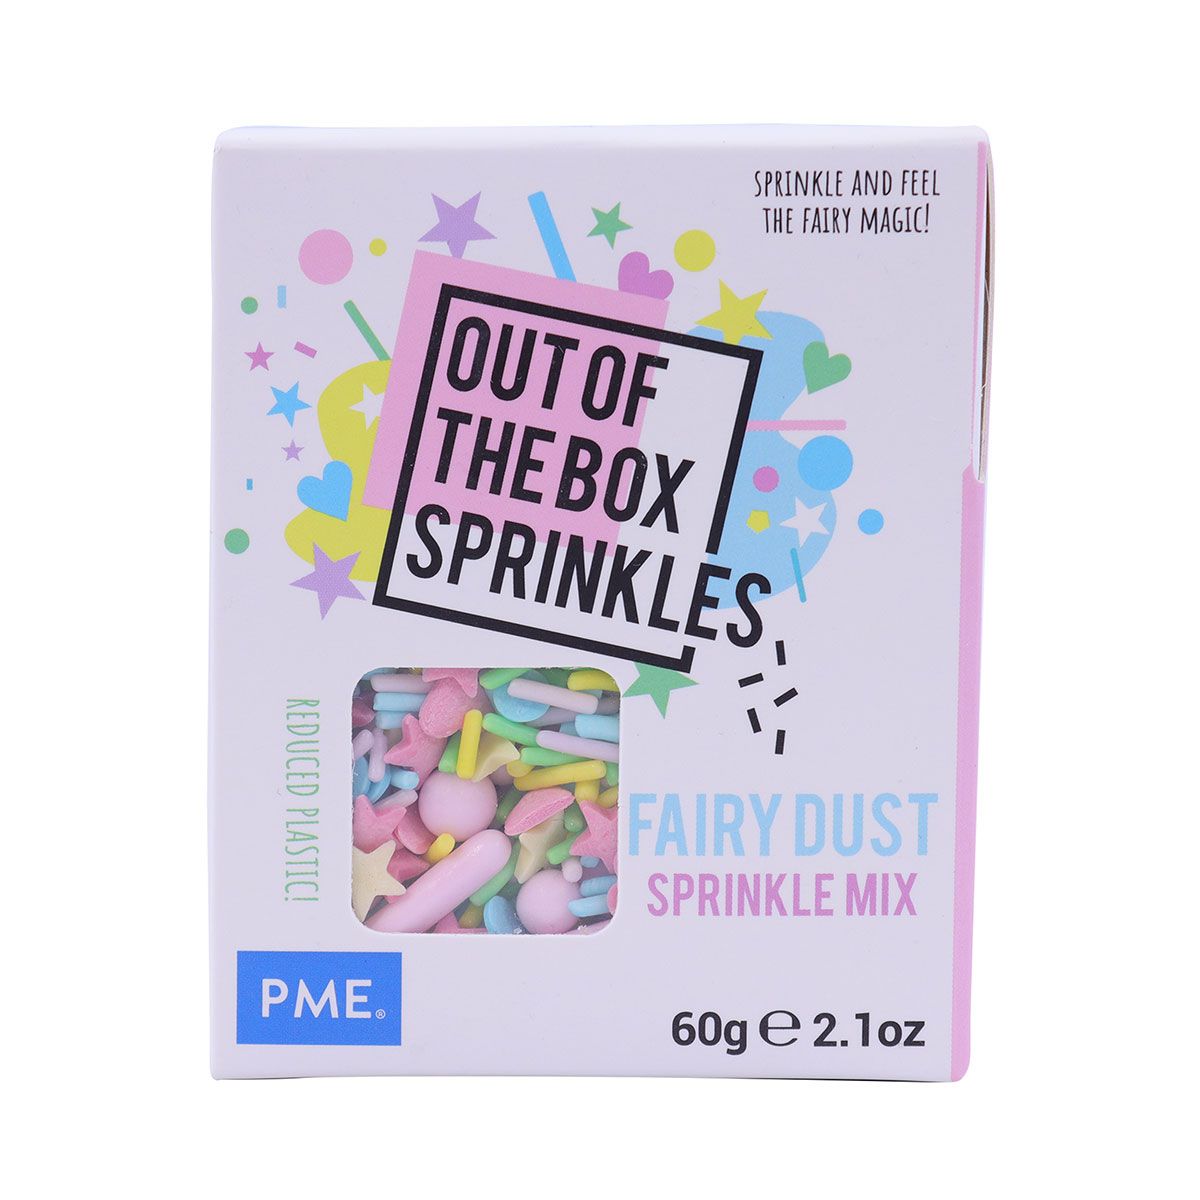 Imagen del producto: Sprinkles OTB de PME - Polvo de hadas